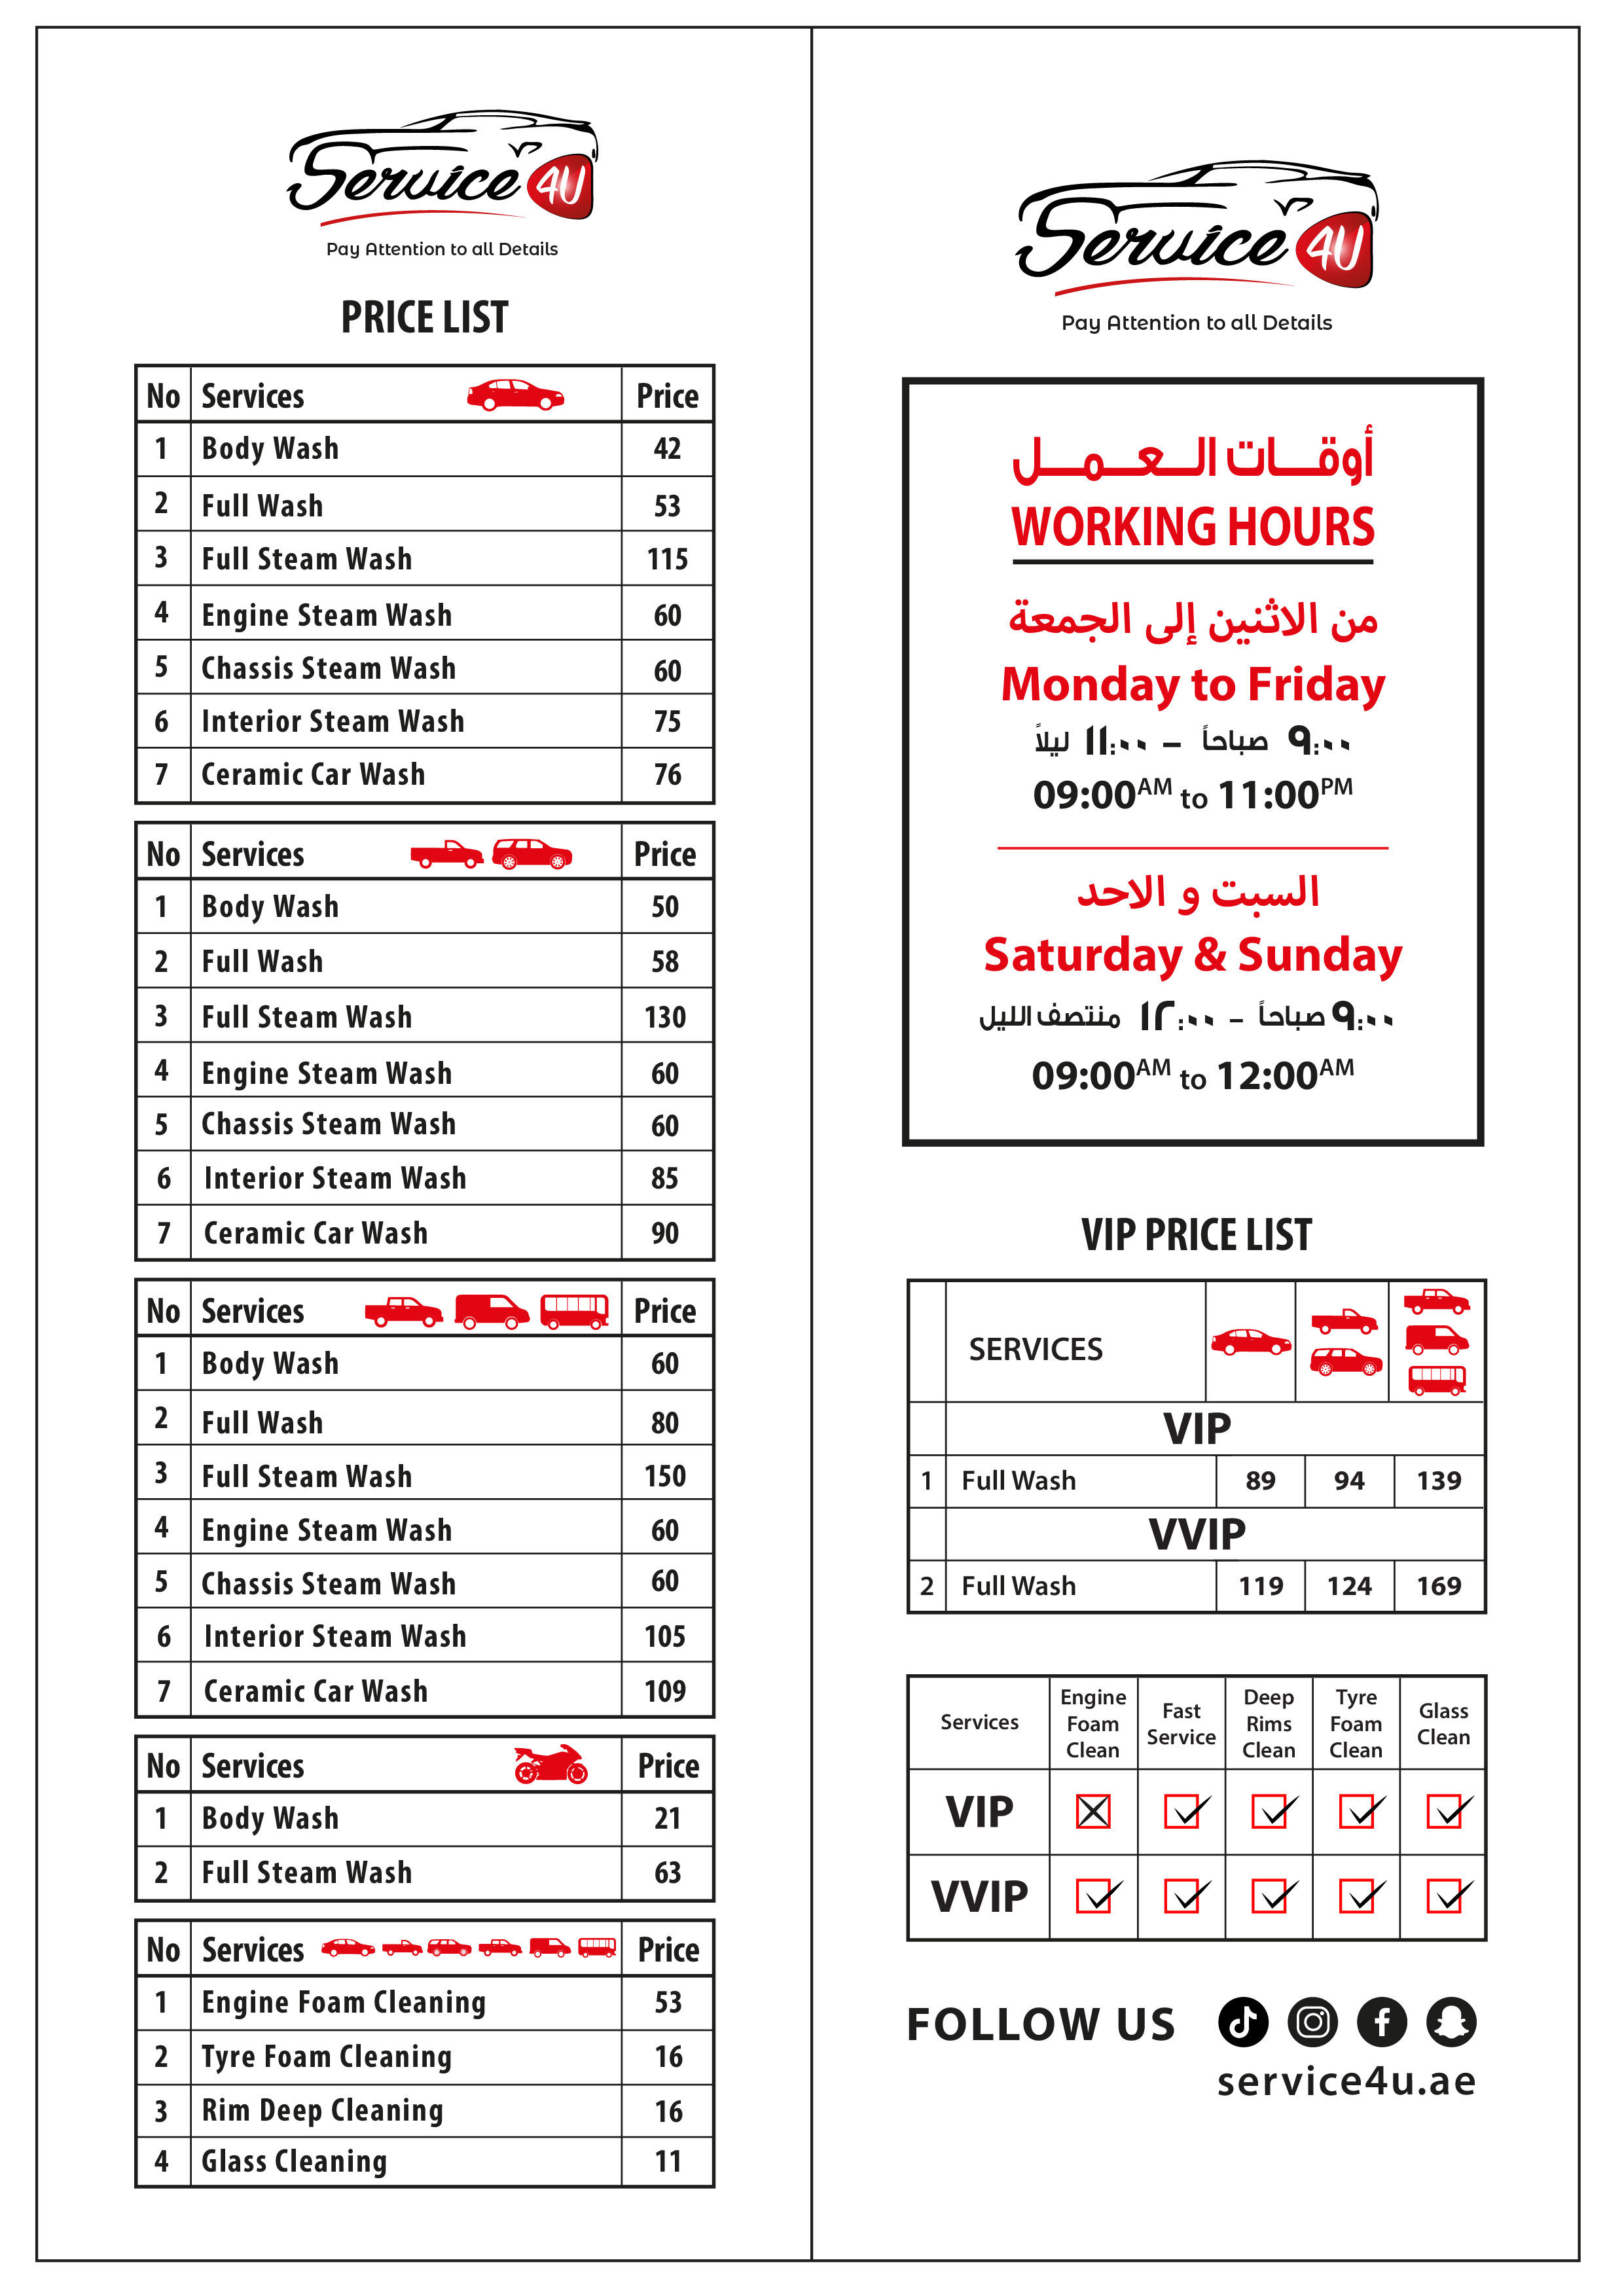 TotalEnergies Service 4U Automotive Center Dubai 04 330 4008